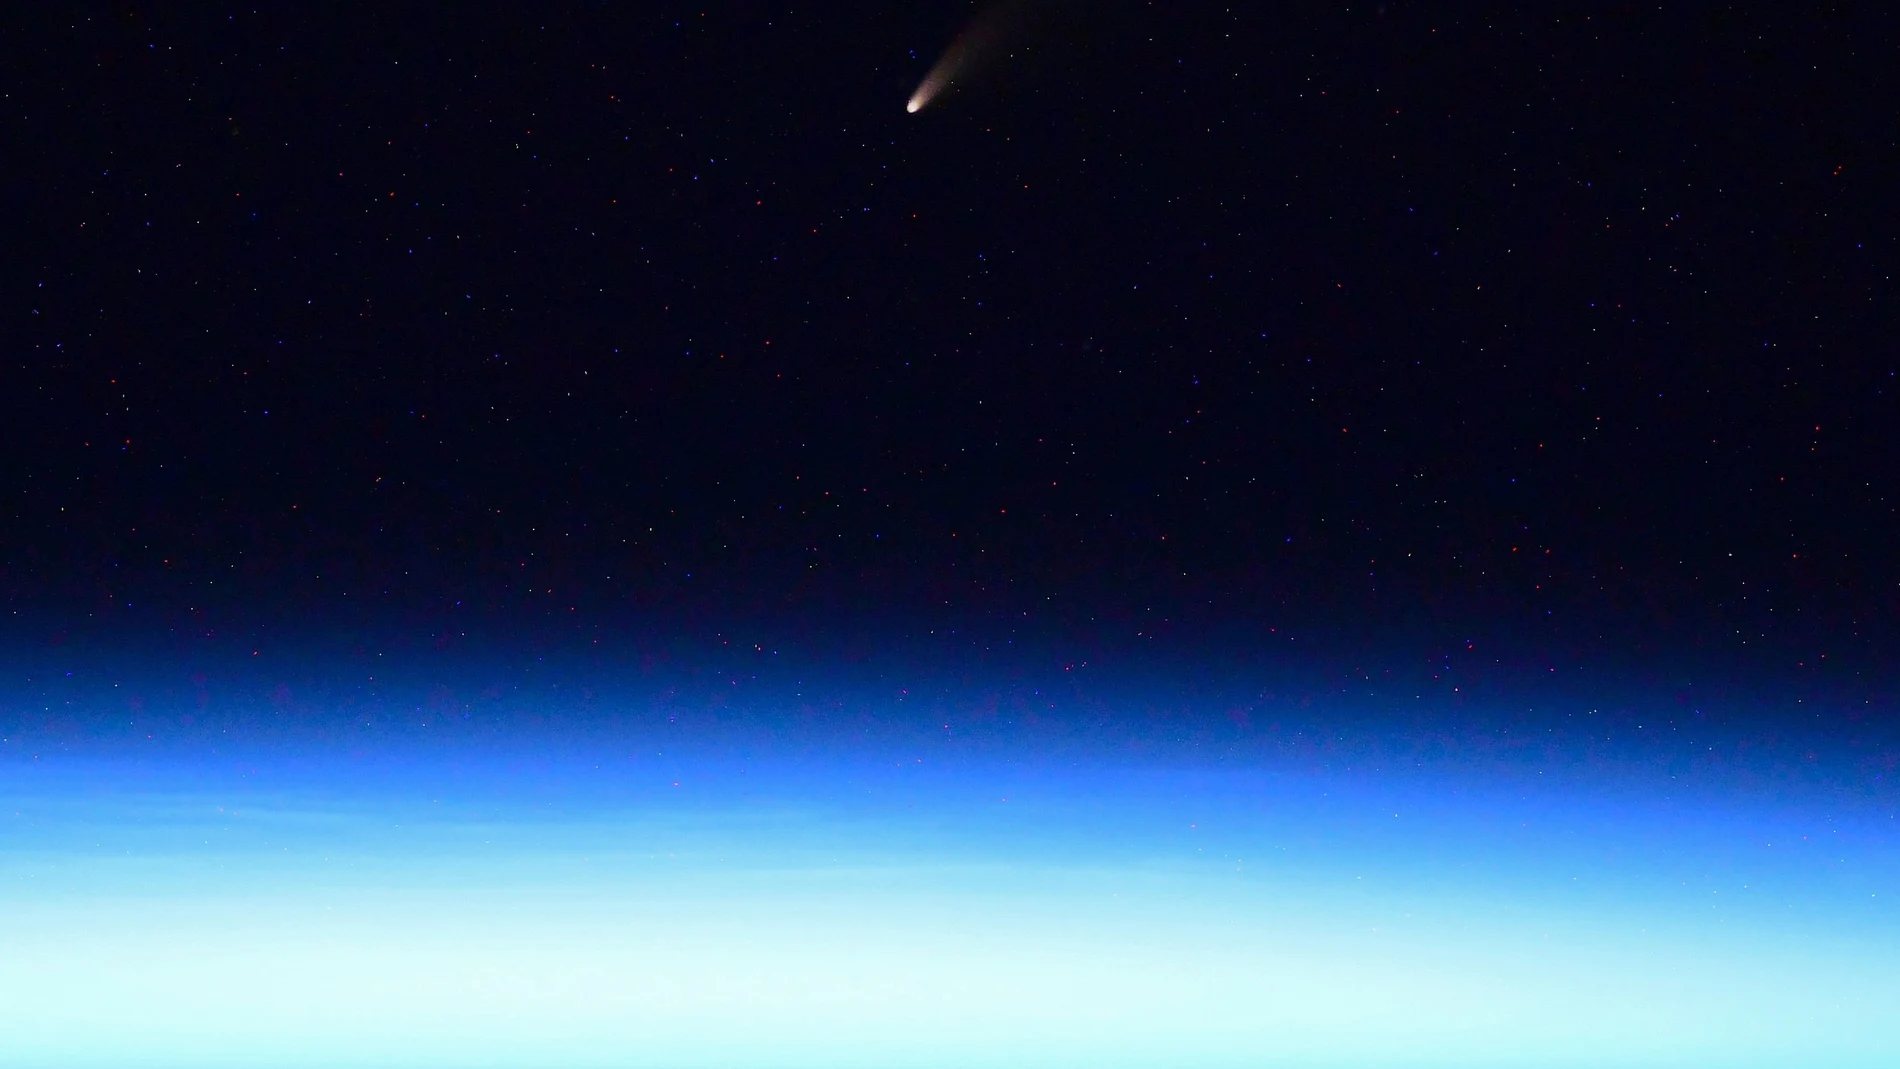 Foto del cometa NEOWISE tomada desde la Estación Espacial Internacional por el astronauta Ivan Vagner